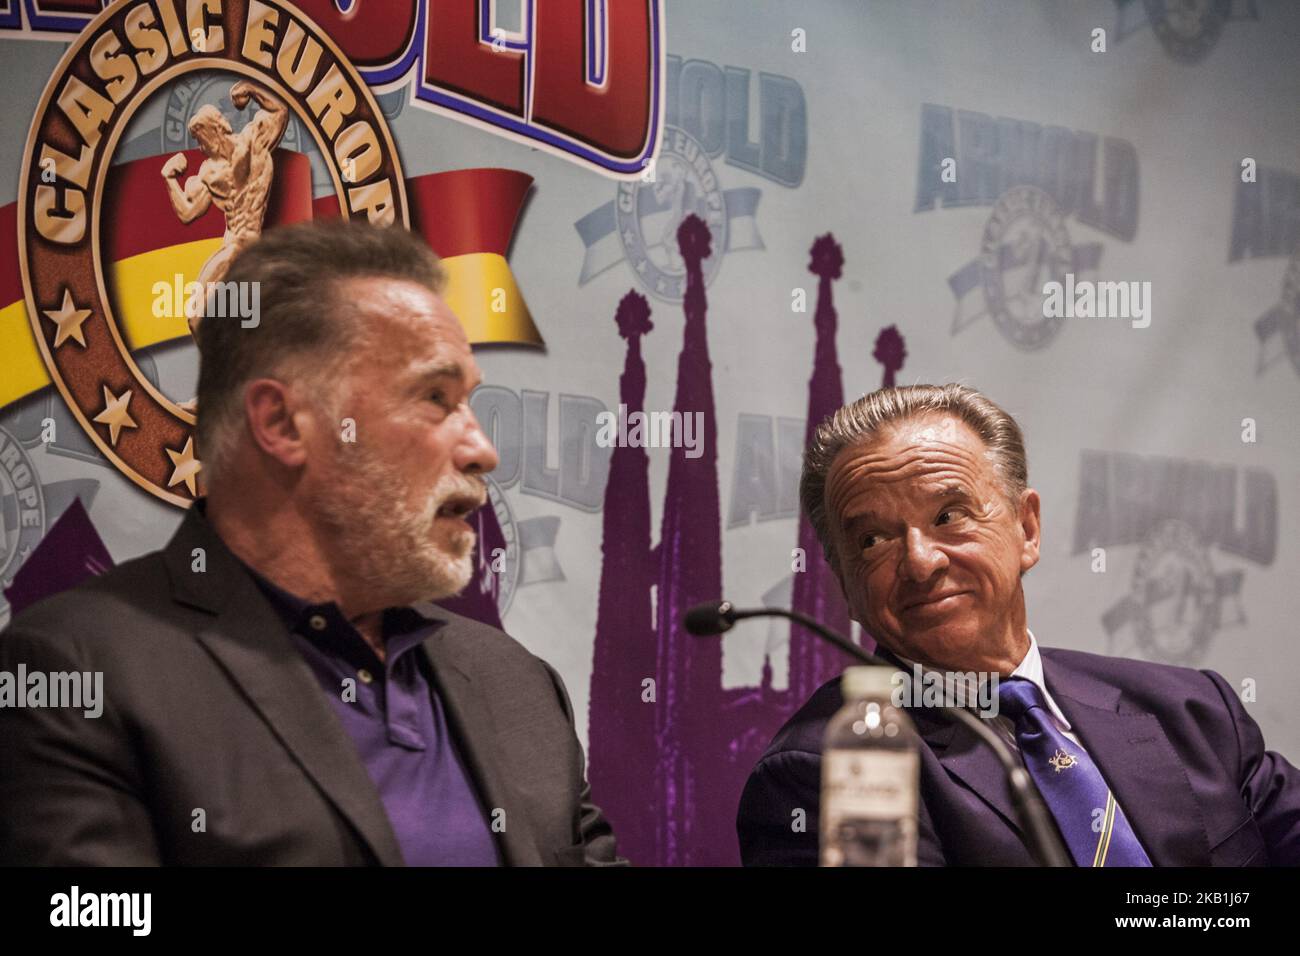 Rafael Santonja, à droite, président de l'IFBB, observe Arnold Schwarzenegger, à gauche, lors d'une conférence de presse dans le concours multisport 'Arnold Classic Europe' 2018 à Barcelone, Espagne, le 28 septembre 2018. (Photo de Celestino Arce/NurPhoto) Banque D'Images